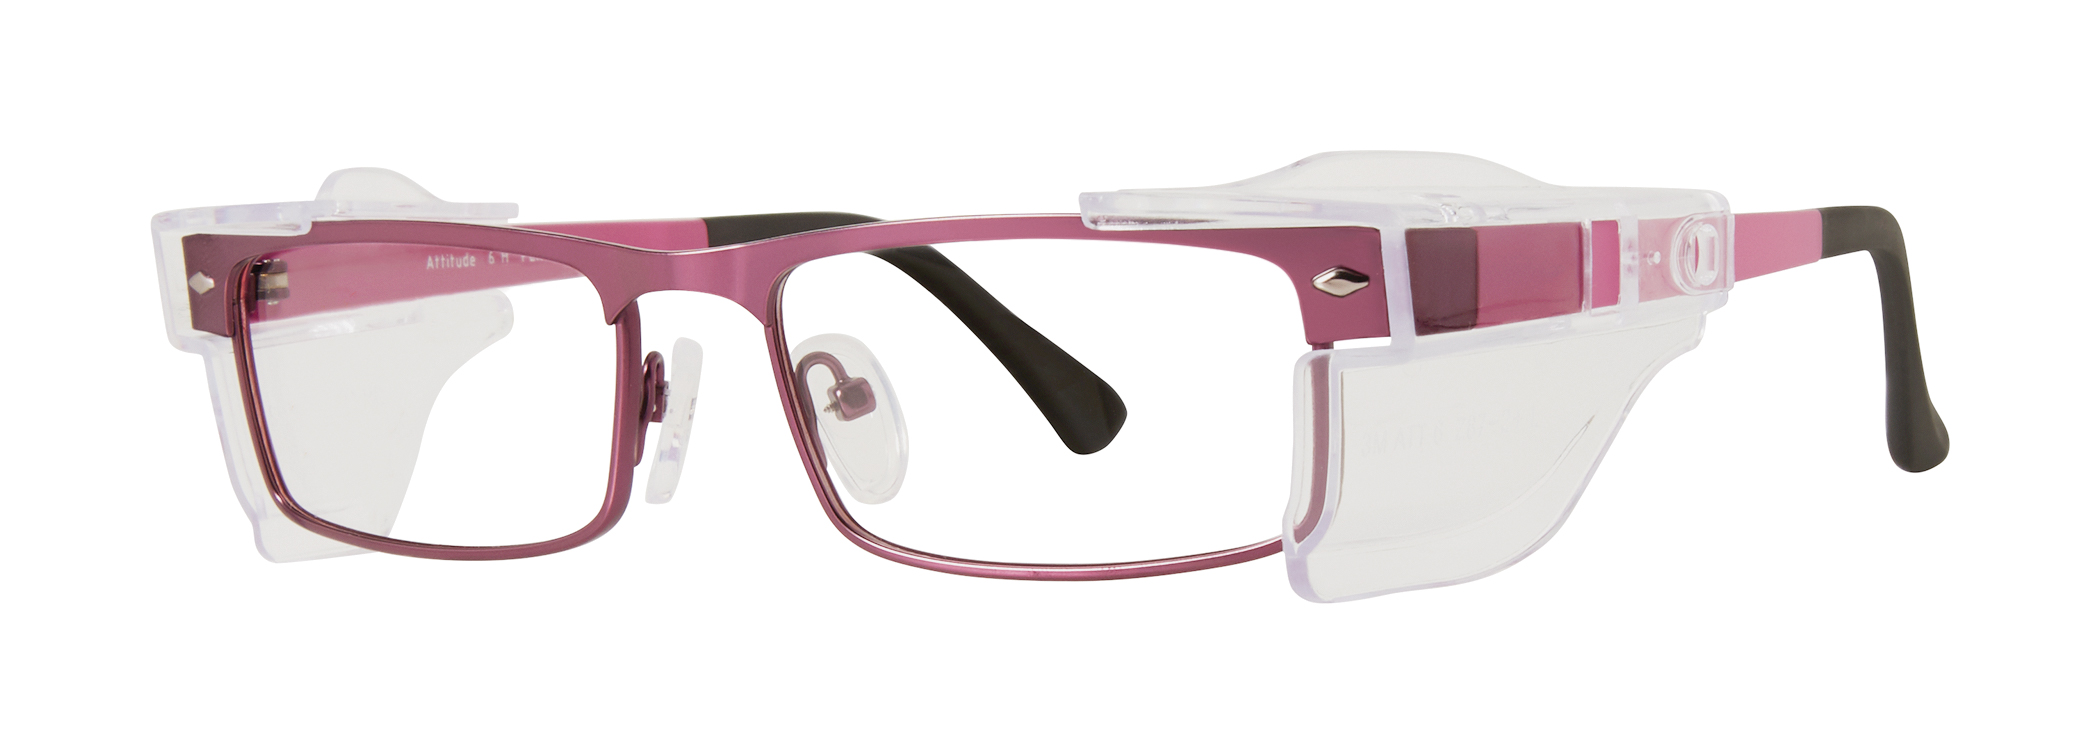 6 claves para que tus gafas duren más y las